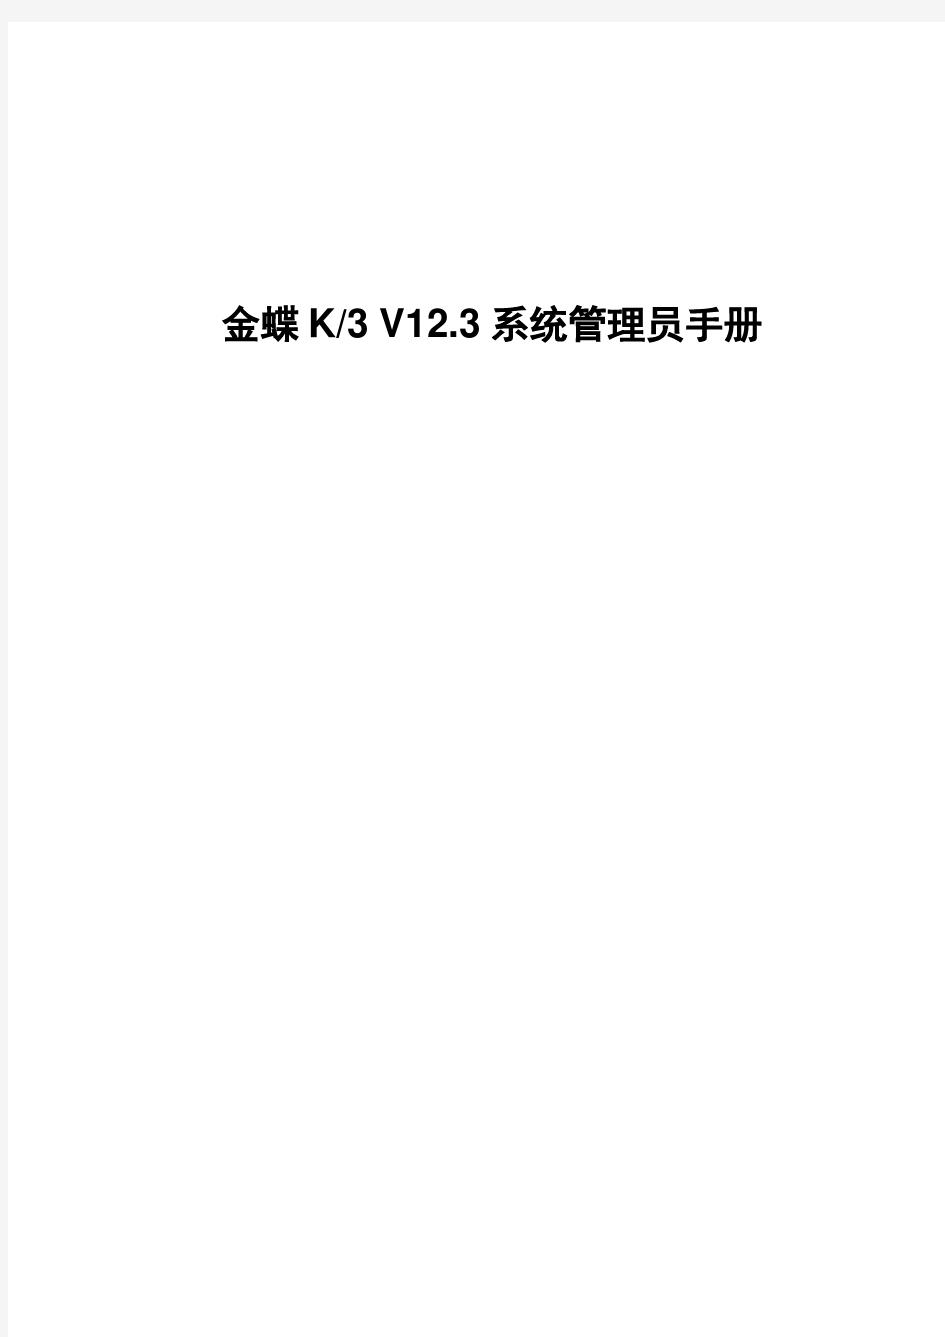 金蝶ERP软件K3V12.3系统管理员手册